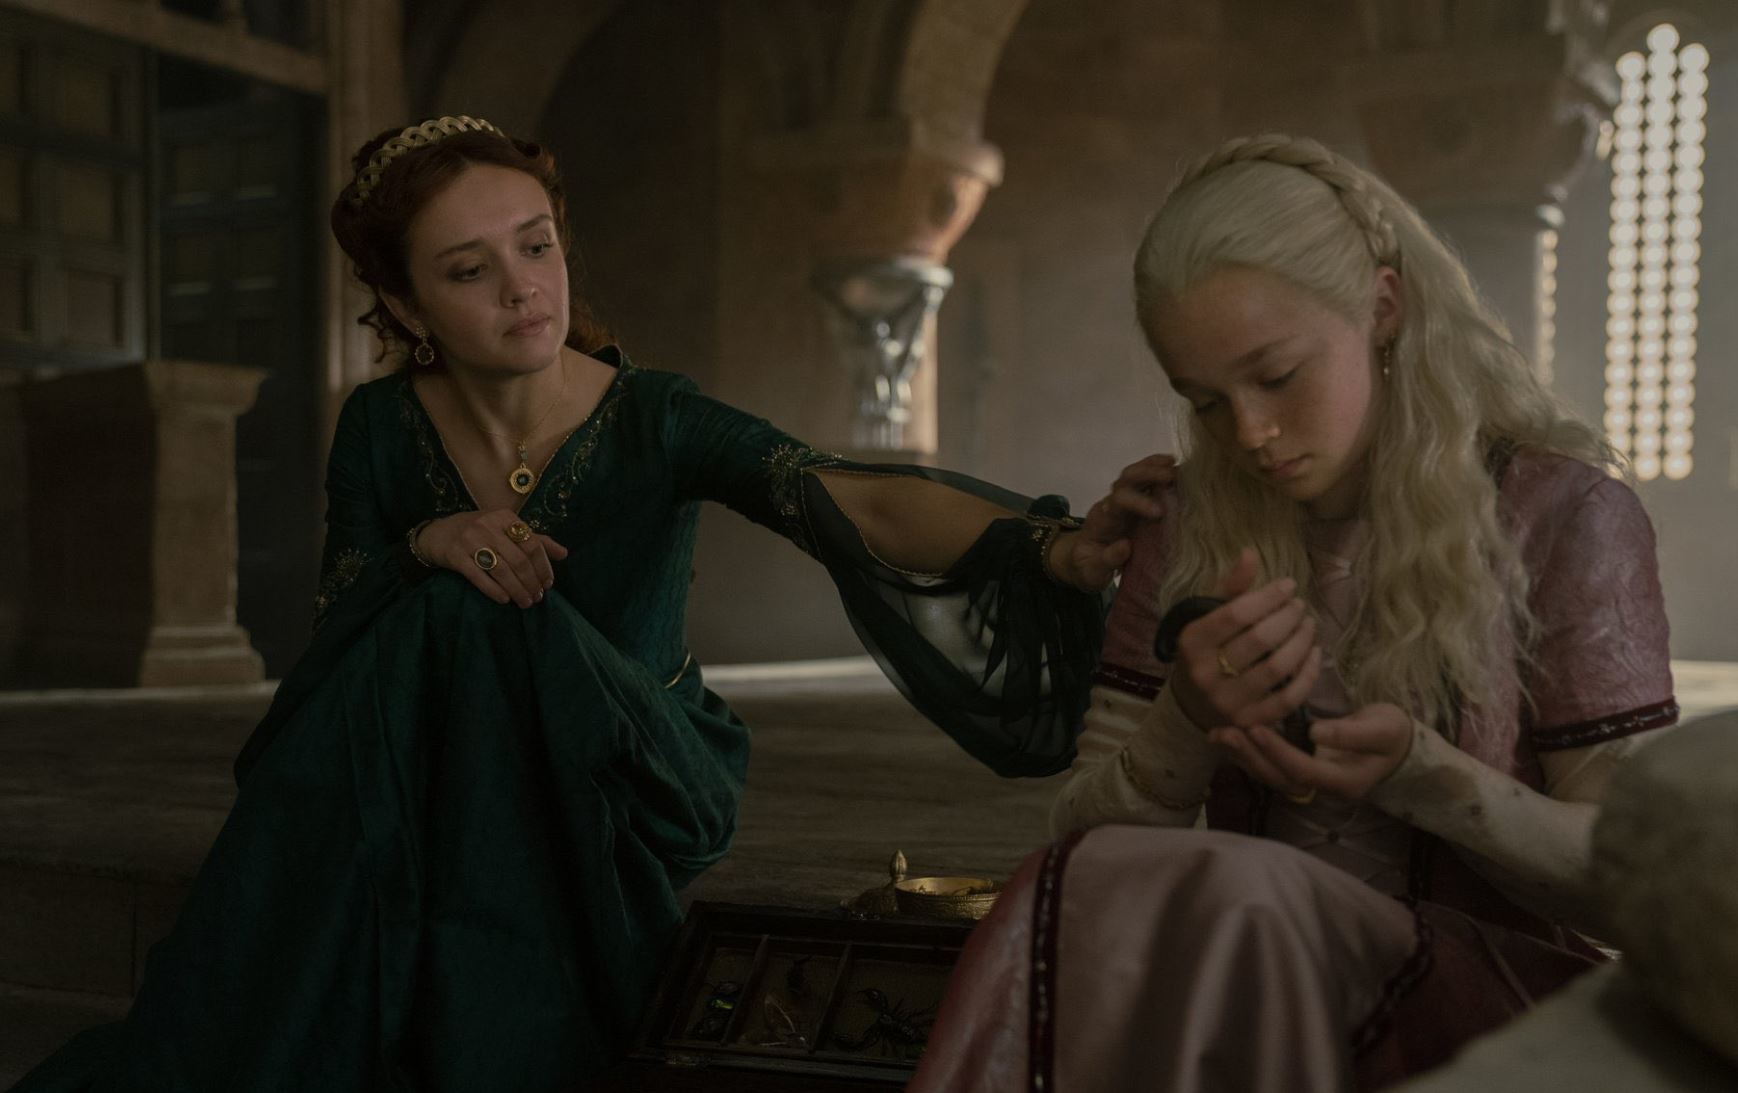 La joven actriz Evie Allen interpreta a la princesa Helaena Targaryen.